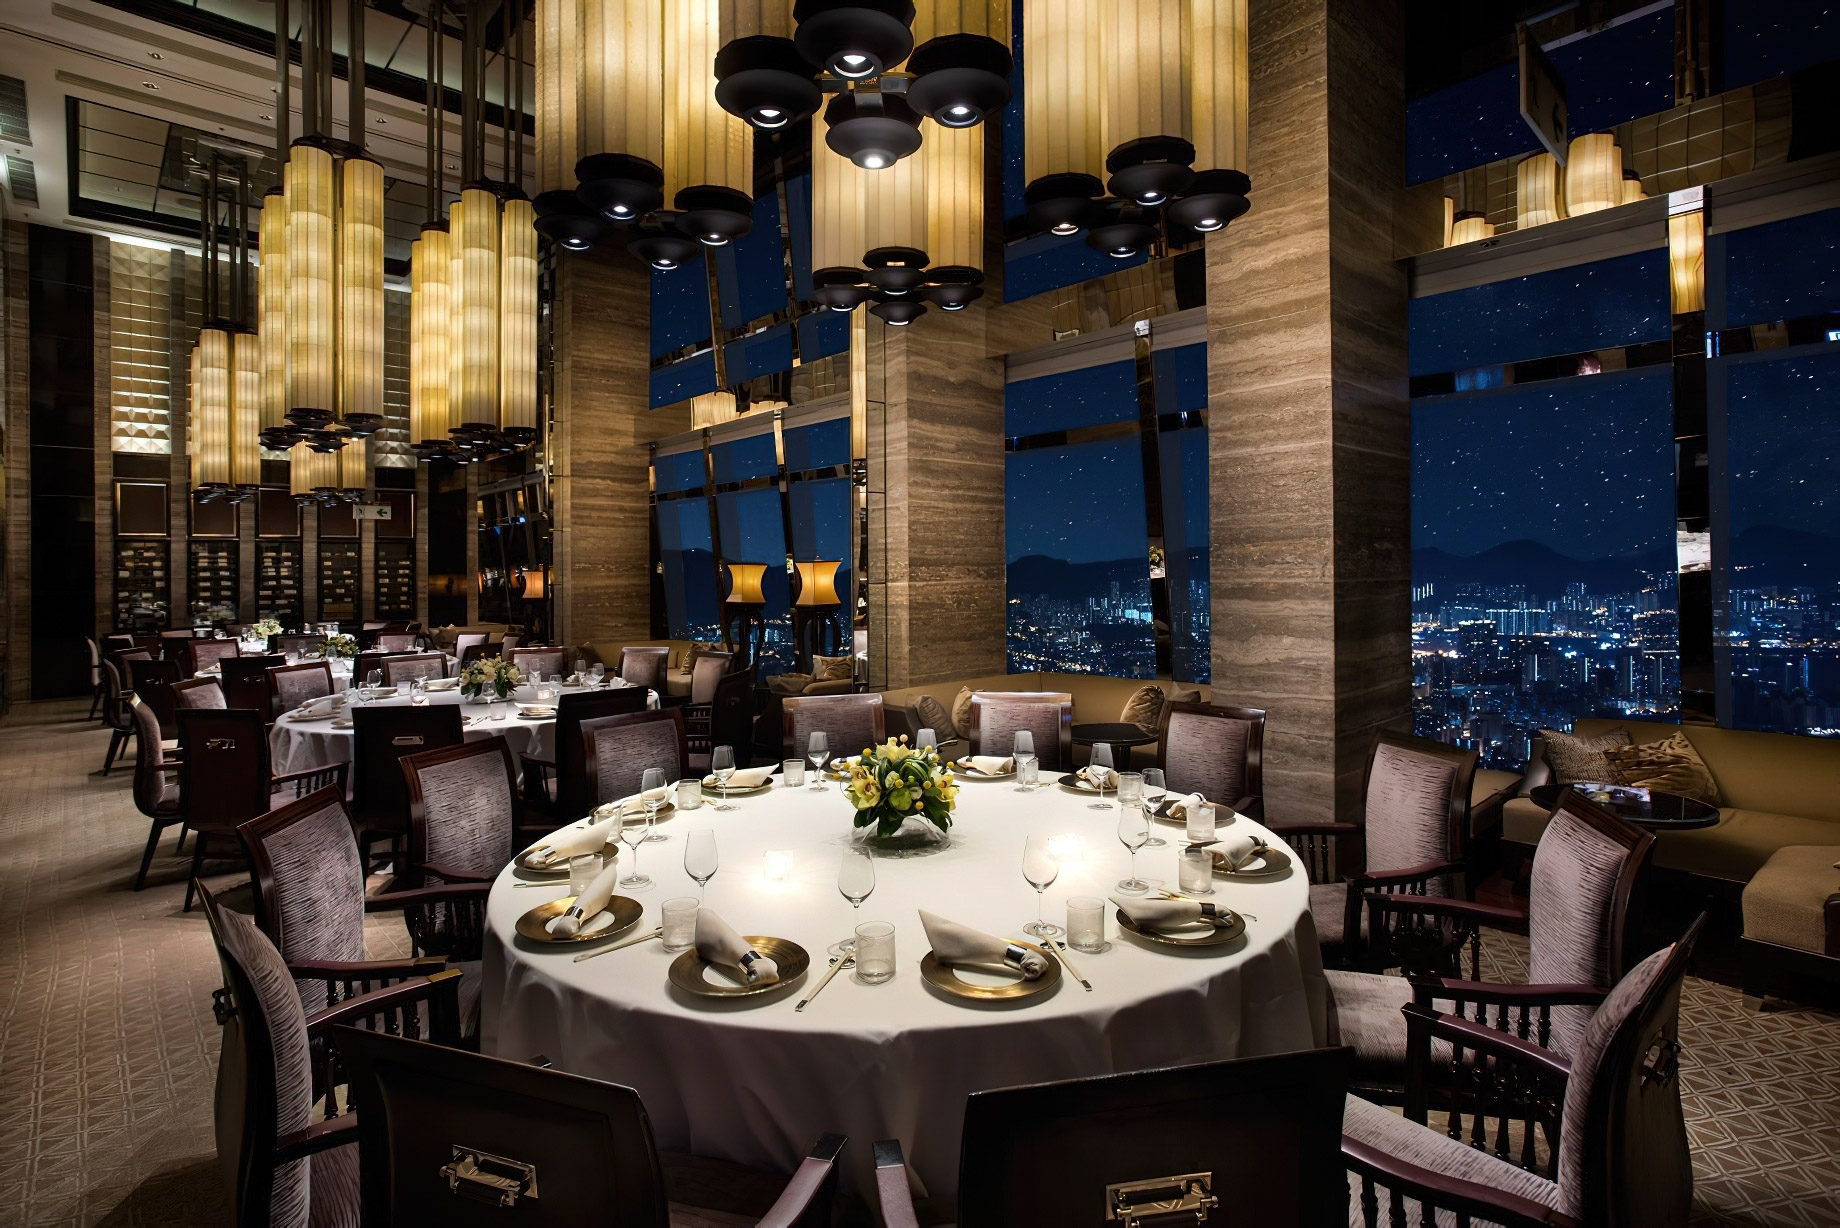 The Ritz-Carlton, Hong Kong Hotel – West Kowloon, Hong Kong – 102nd Floor Tin Lung Heen Restaurant